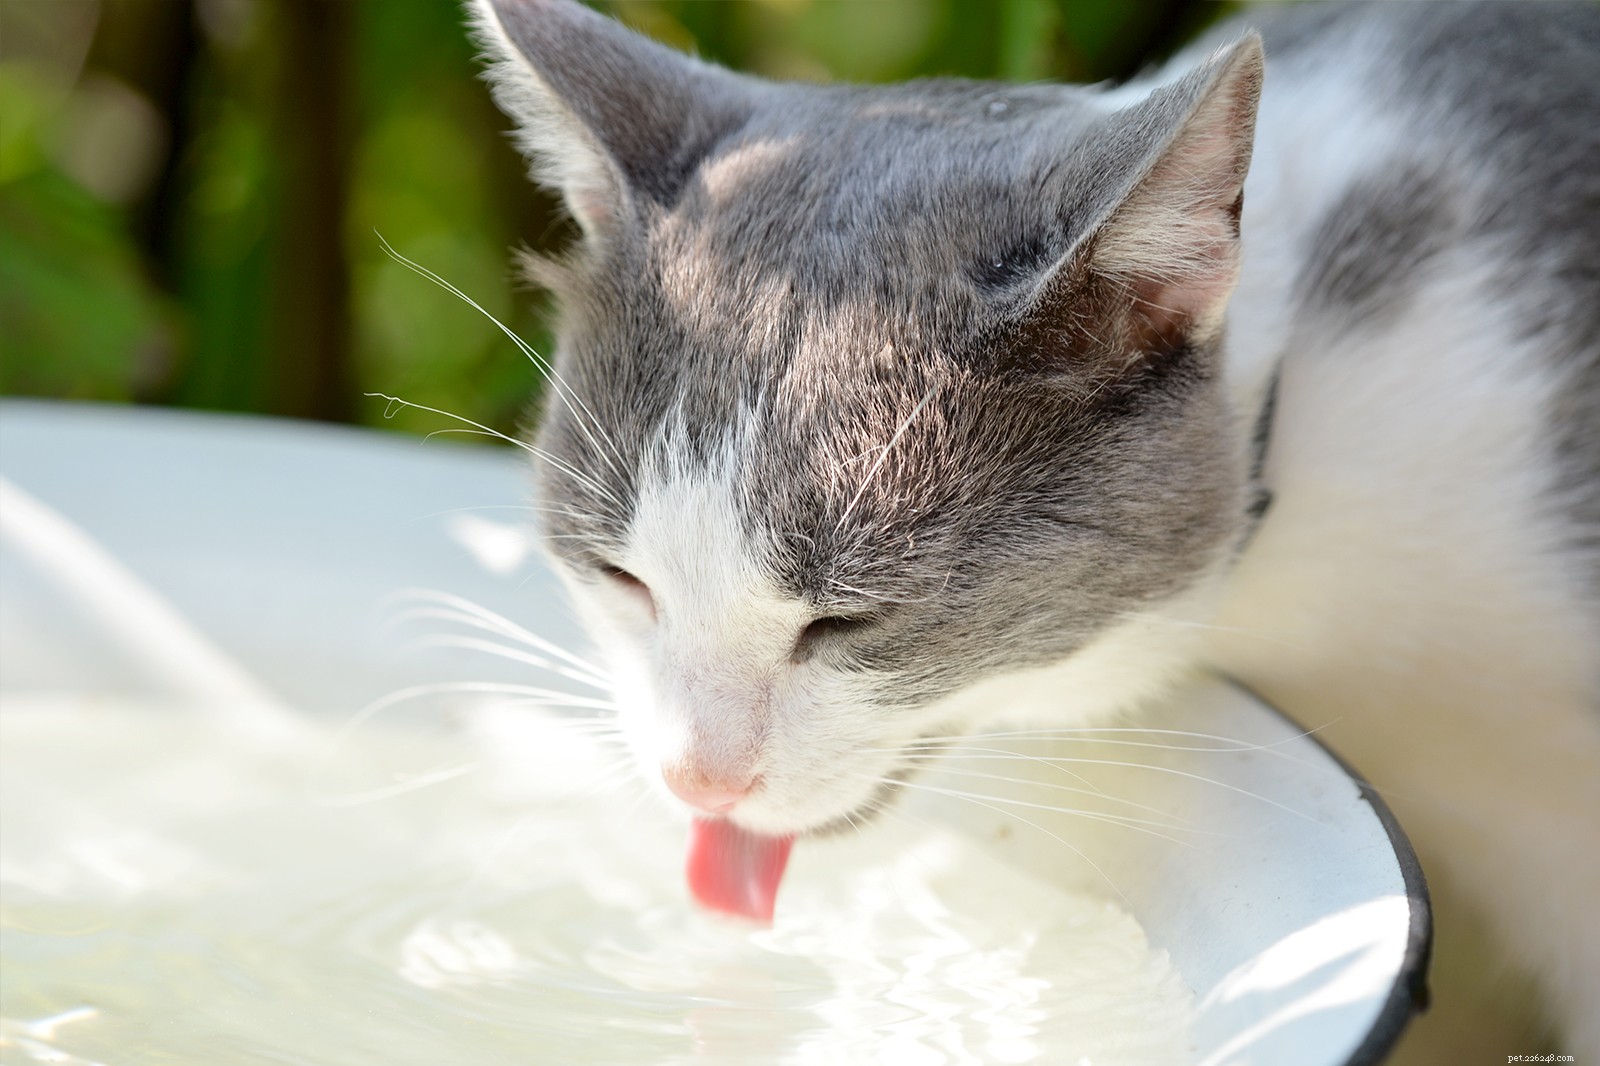 5 maneiras inteligentes de incentivar seu gato a beber mais água, de acordo com um veterinário